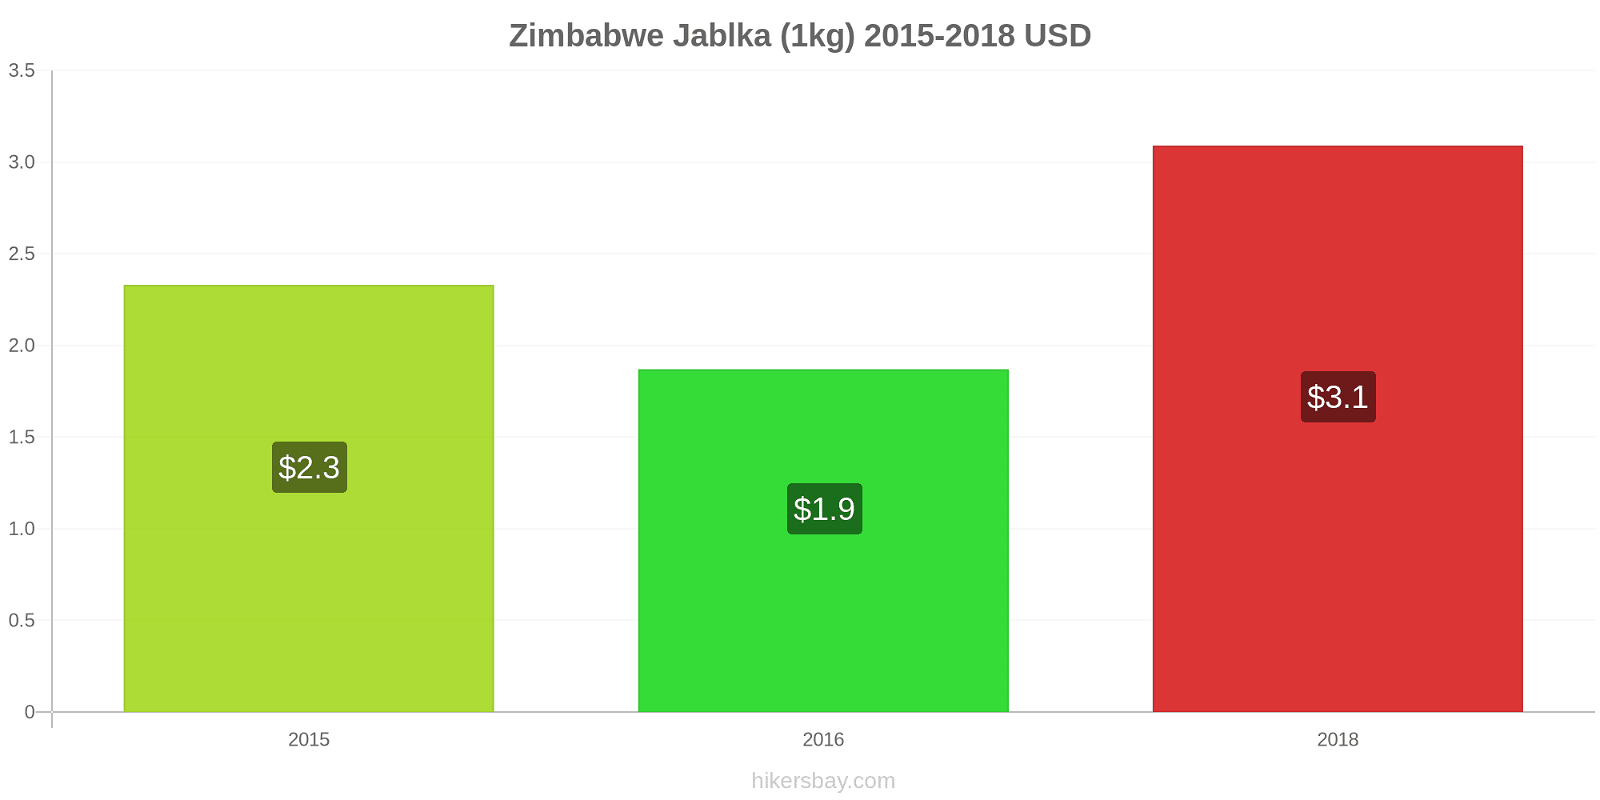 Zimbabwe změny cen Jablka (1kg) hikersbay.com